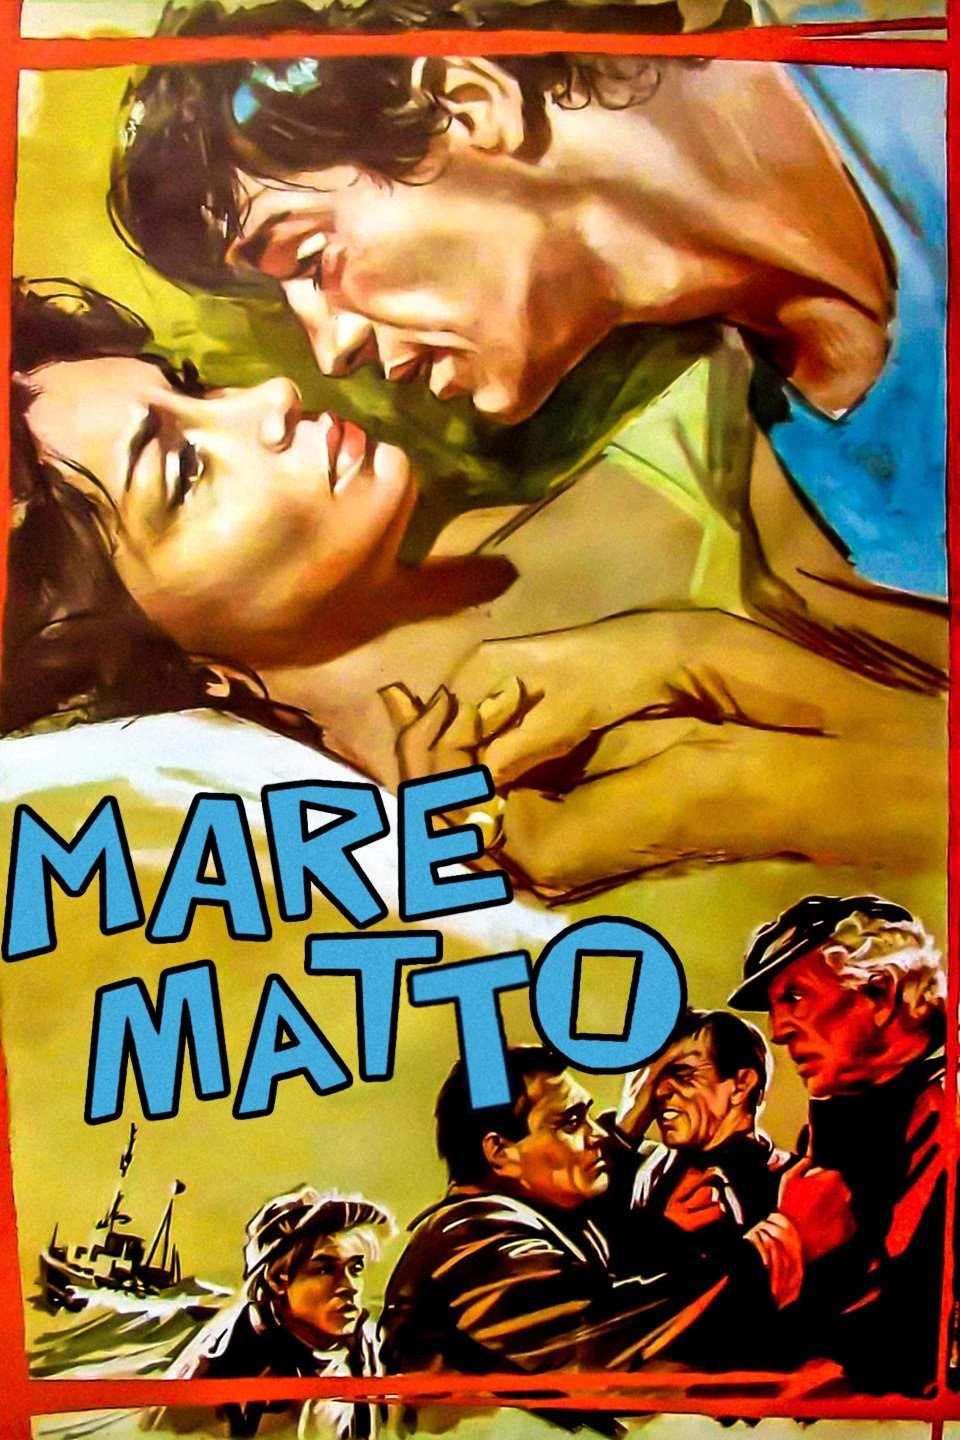 Mare matto [B/N] [HD] (1963)